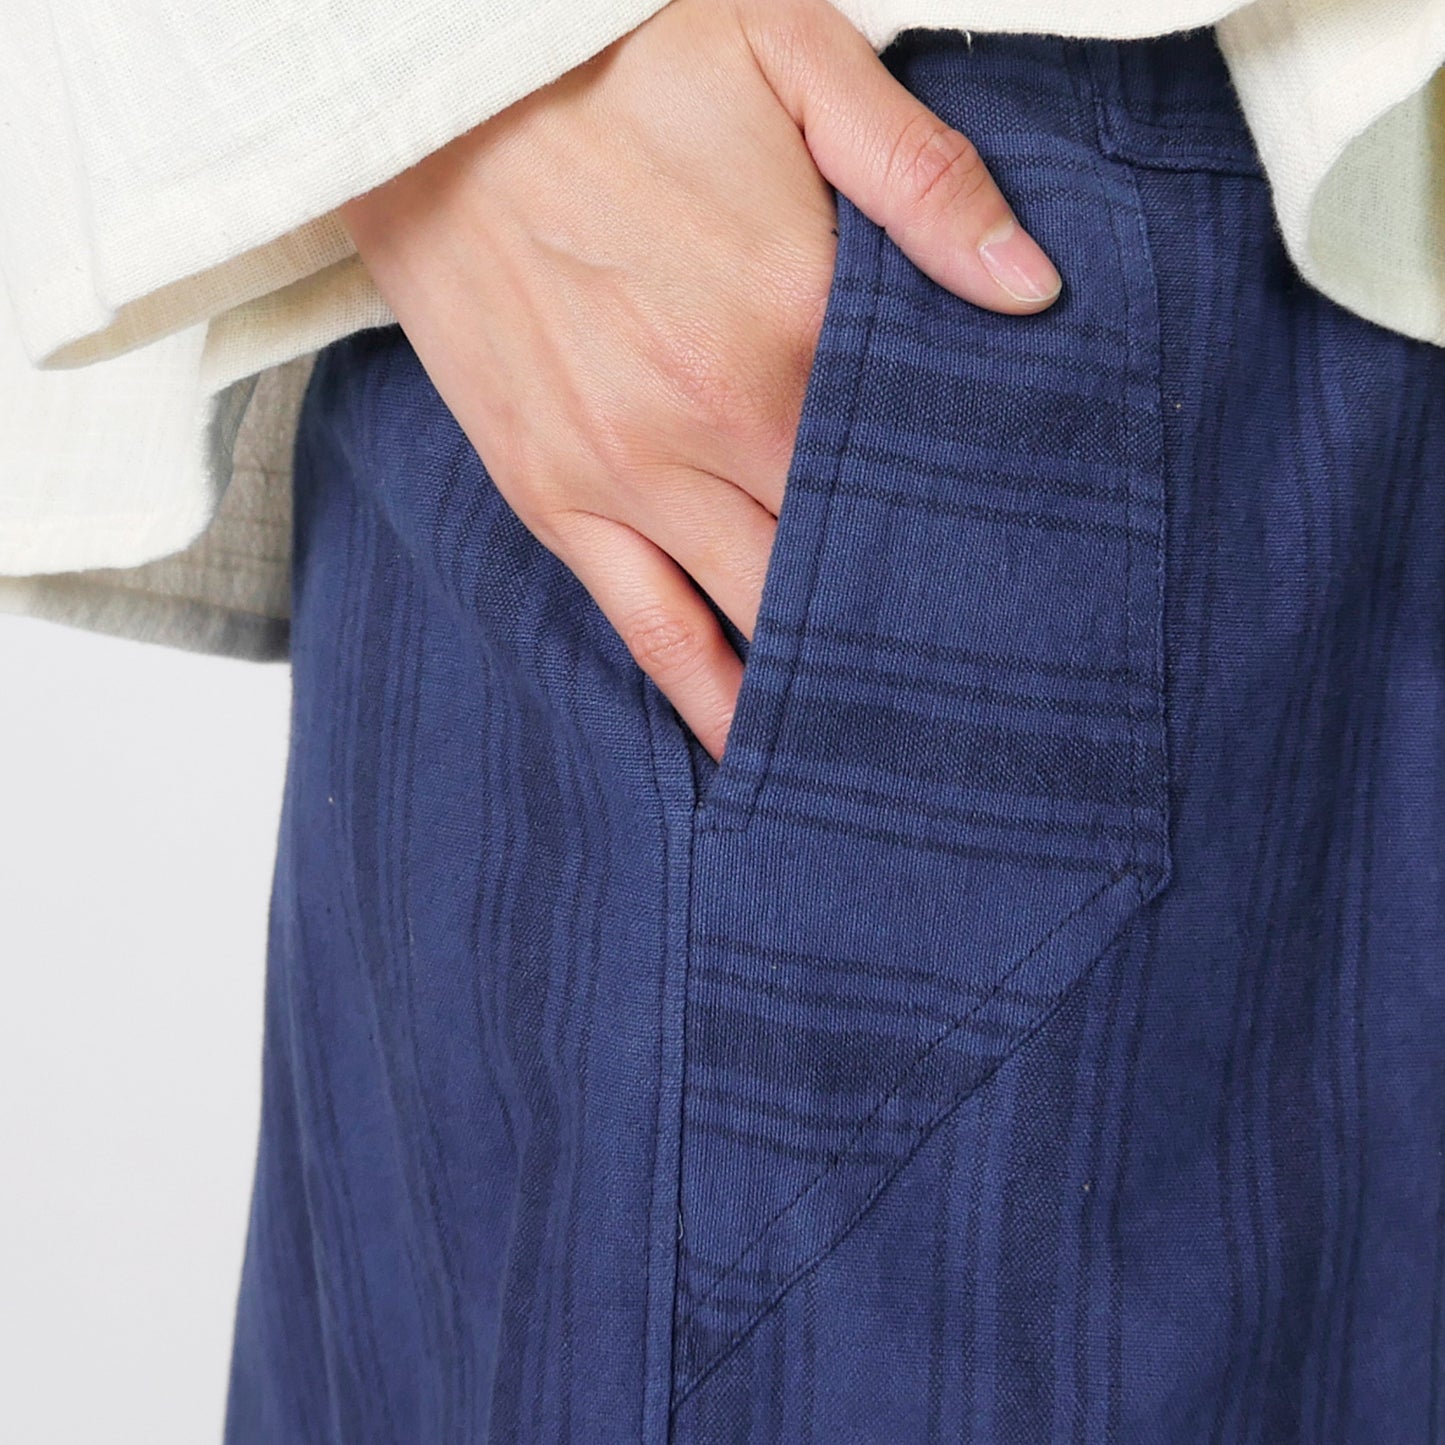 Pantalon cache-cœur en coton rayé indigo